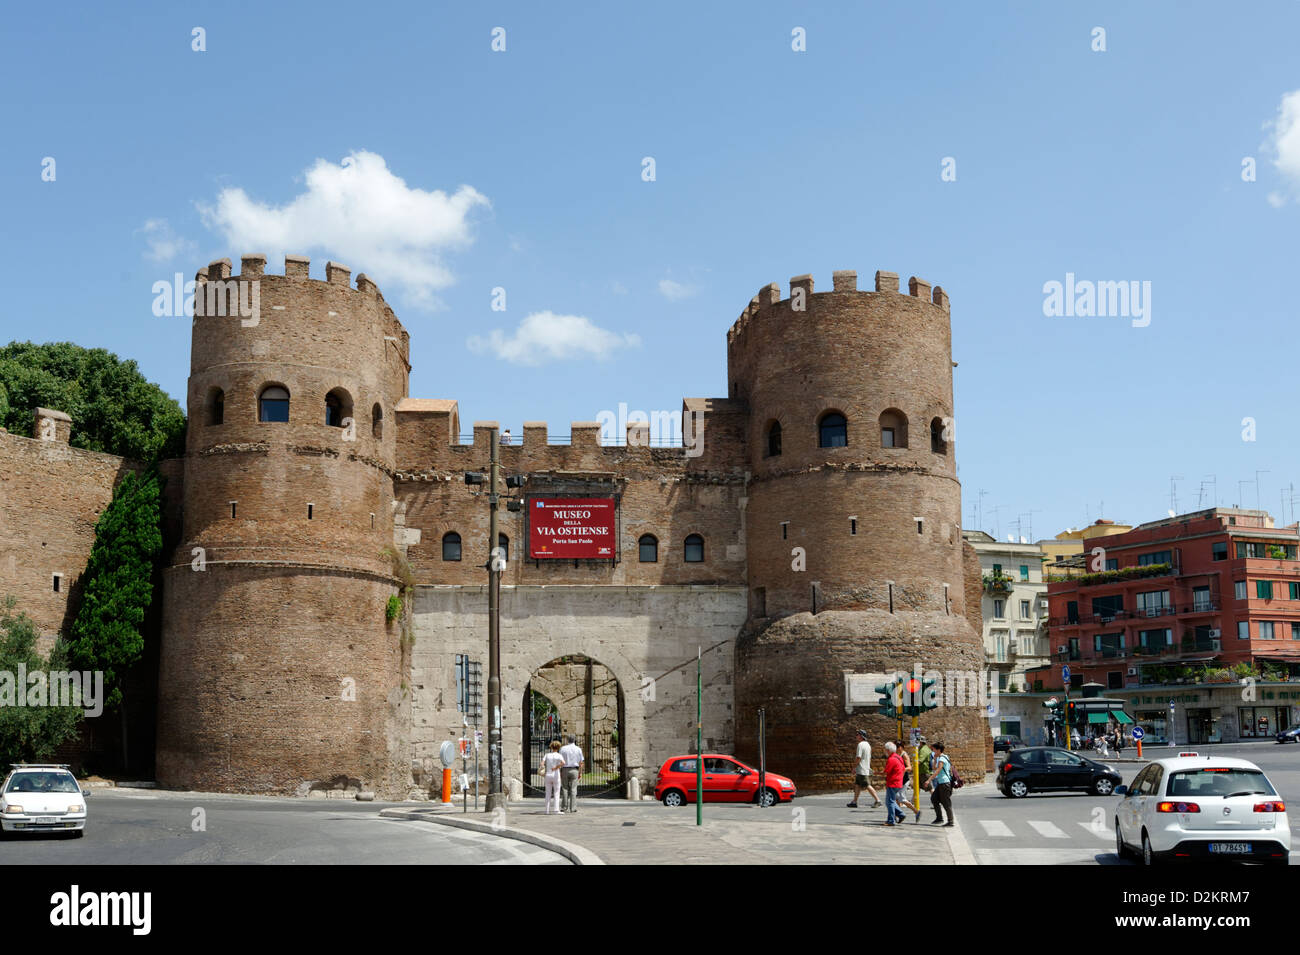 La Porta San Paolo avec des tours jumelles, l'une des portes du sud dans le circuit de 19 kilomètres de la 3ème siècle Murs Auréliens. Banque D'Images